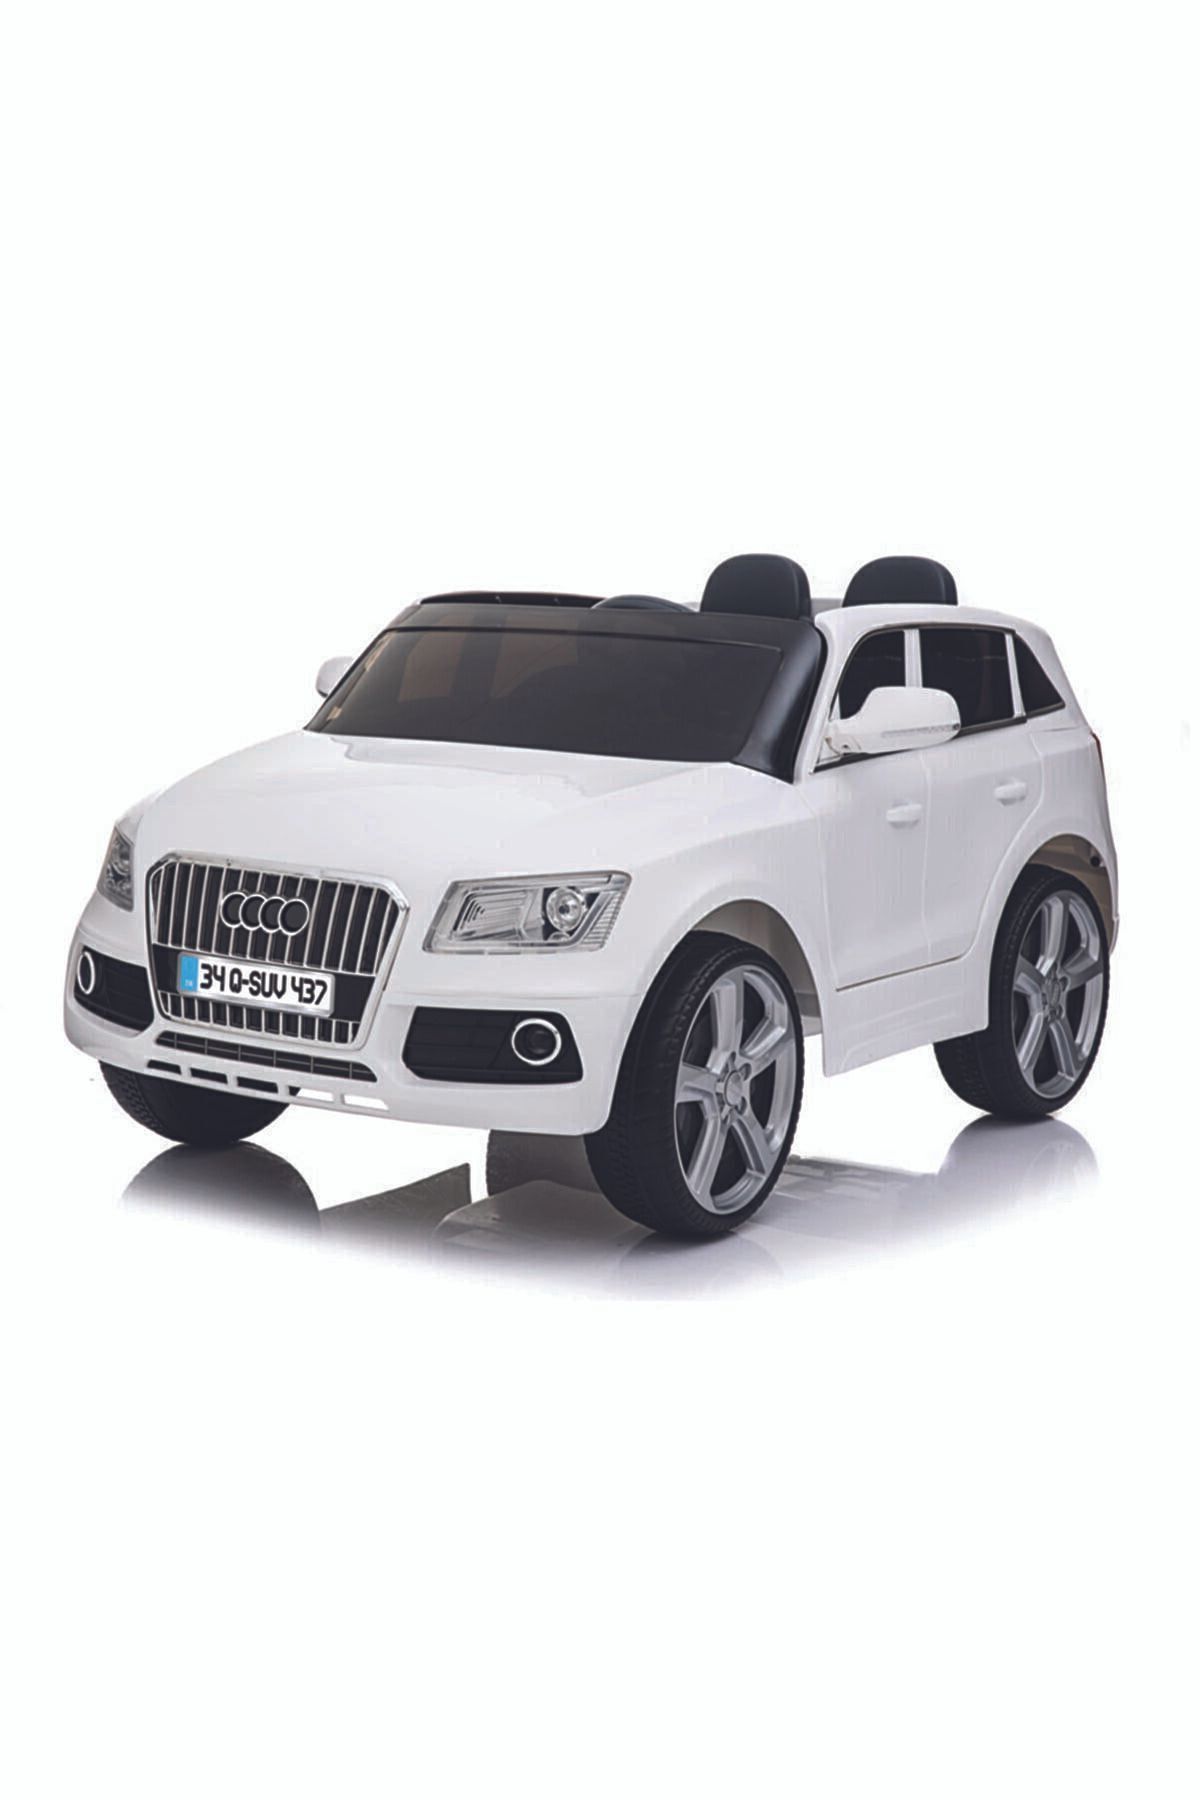 Babyhope Marka: Baby Hope 437 Audi Q-suv 12v Beyaz Akülü Araba Kategori: Oyuncak Bebek Ve Aksesuarları